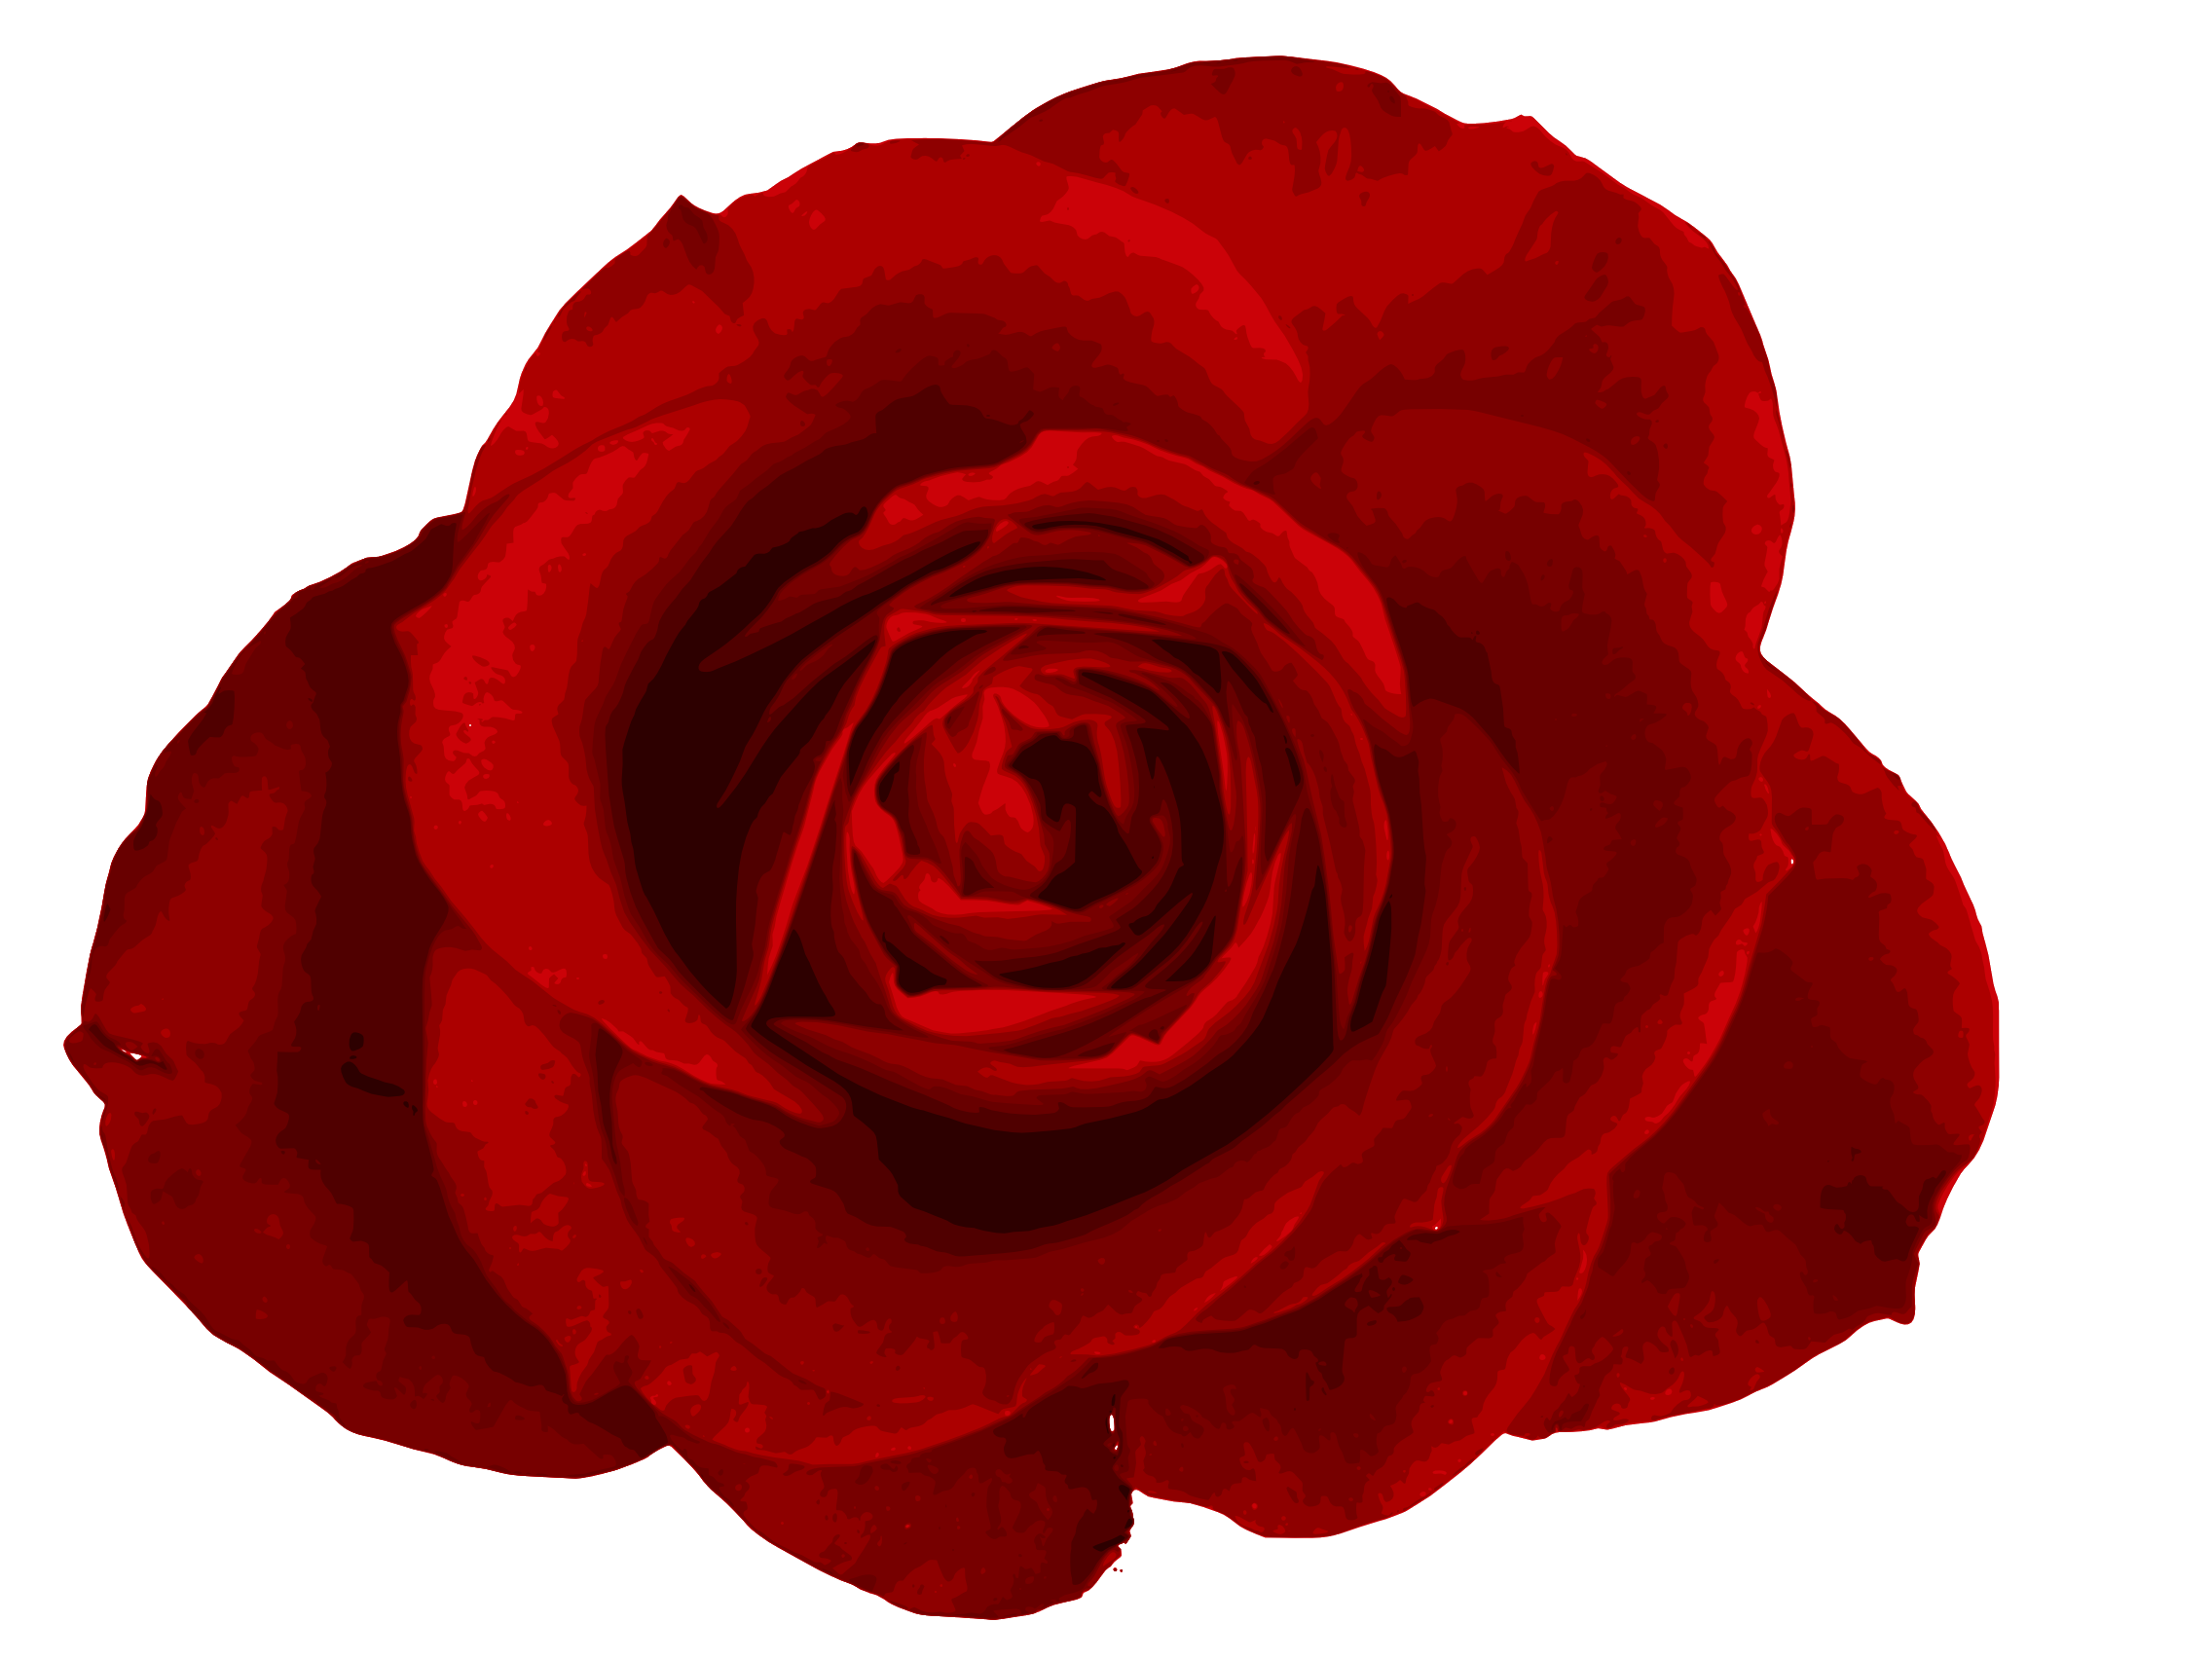 Hoa hồng đỏ PNG là một trong những loại hình ảnh đẹp nhất để trang trí cho các thiết kế của bạn. Với chất lượng cao và độ phân giải tuyệt vời, bạn có thể tận dụng hình ảnh này để làm nền cho thiệp, thiết kế in ấn, hay các sản phẩm khác. Hãy xem qua hình ảnh để cảm nhận vẻ đẹp tuyệt vời của hoa hồng đỏ PNG.